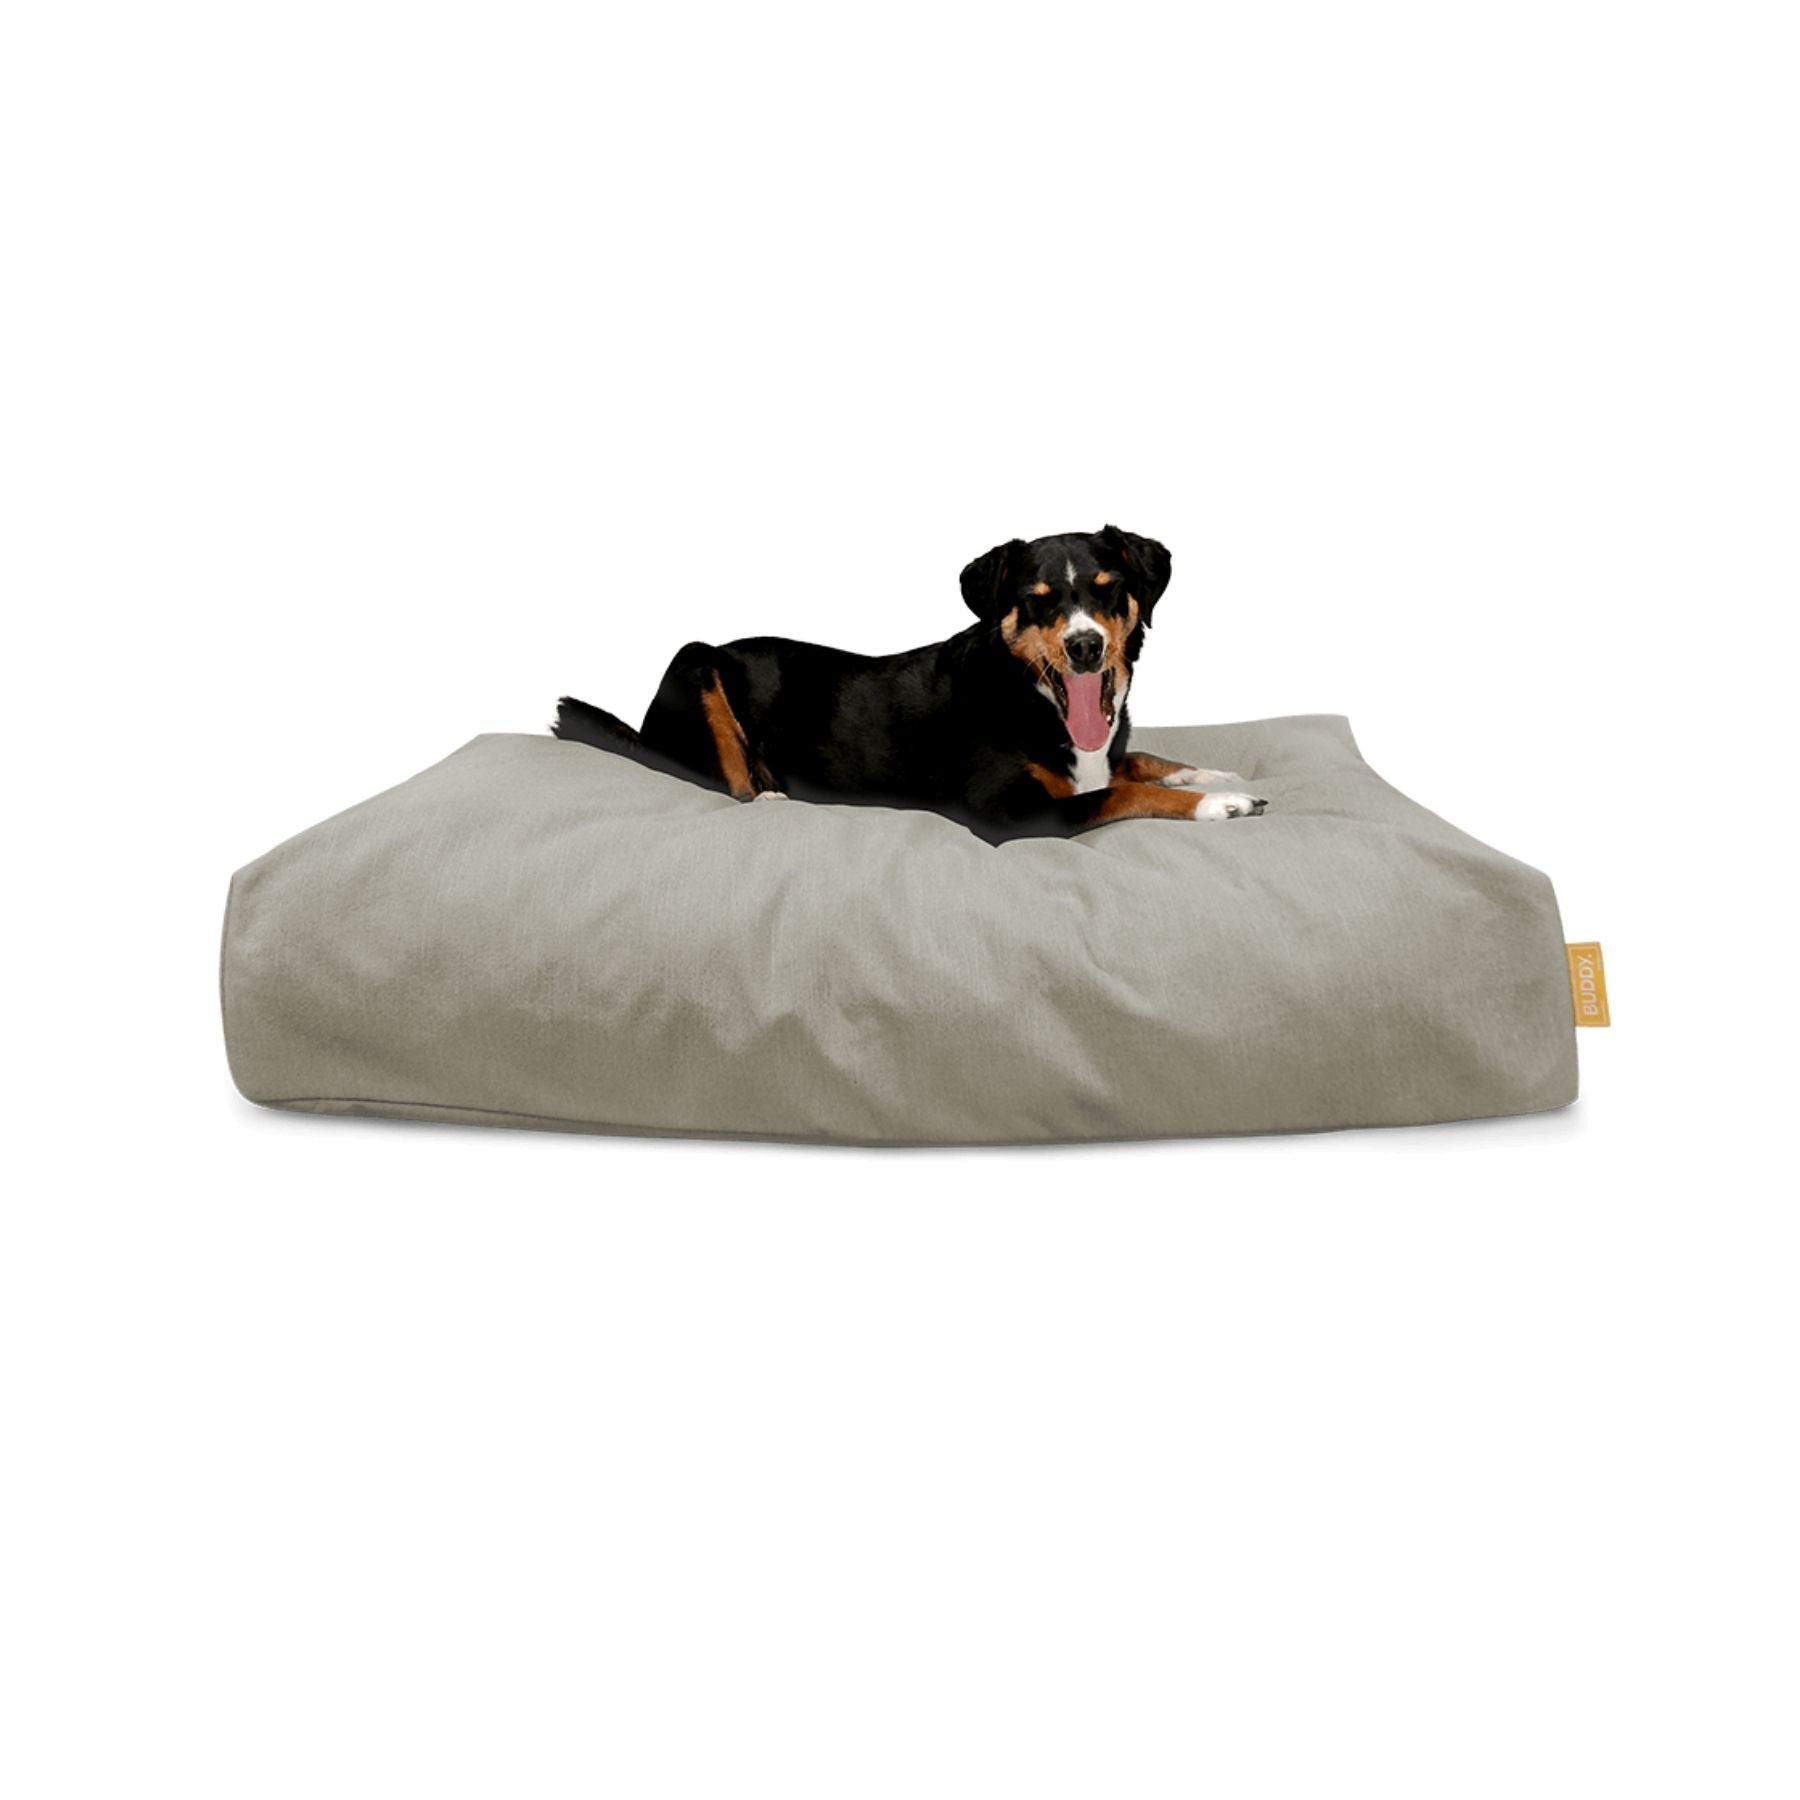 Nachhaltiges Hundebett von BUDDY PETS bei PAWSOME Hundezubehör erhältlich. Wir bieten dieses bequeme Bett in 4 Farben & 3 Größen an. Dies ist die Farbe Beach Beige.